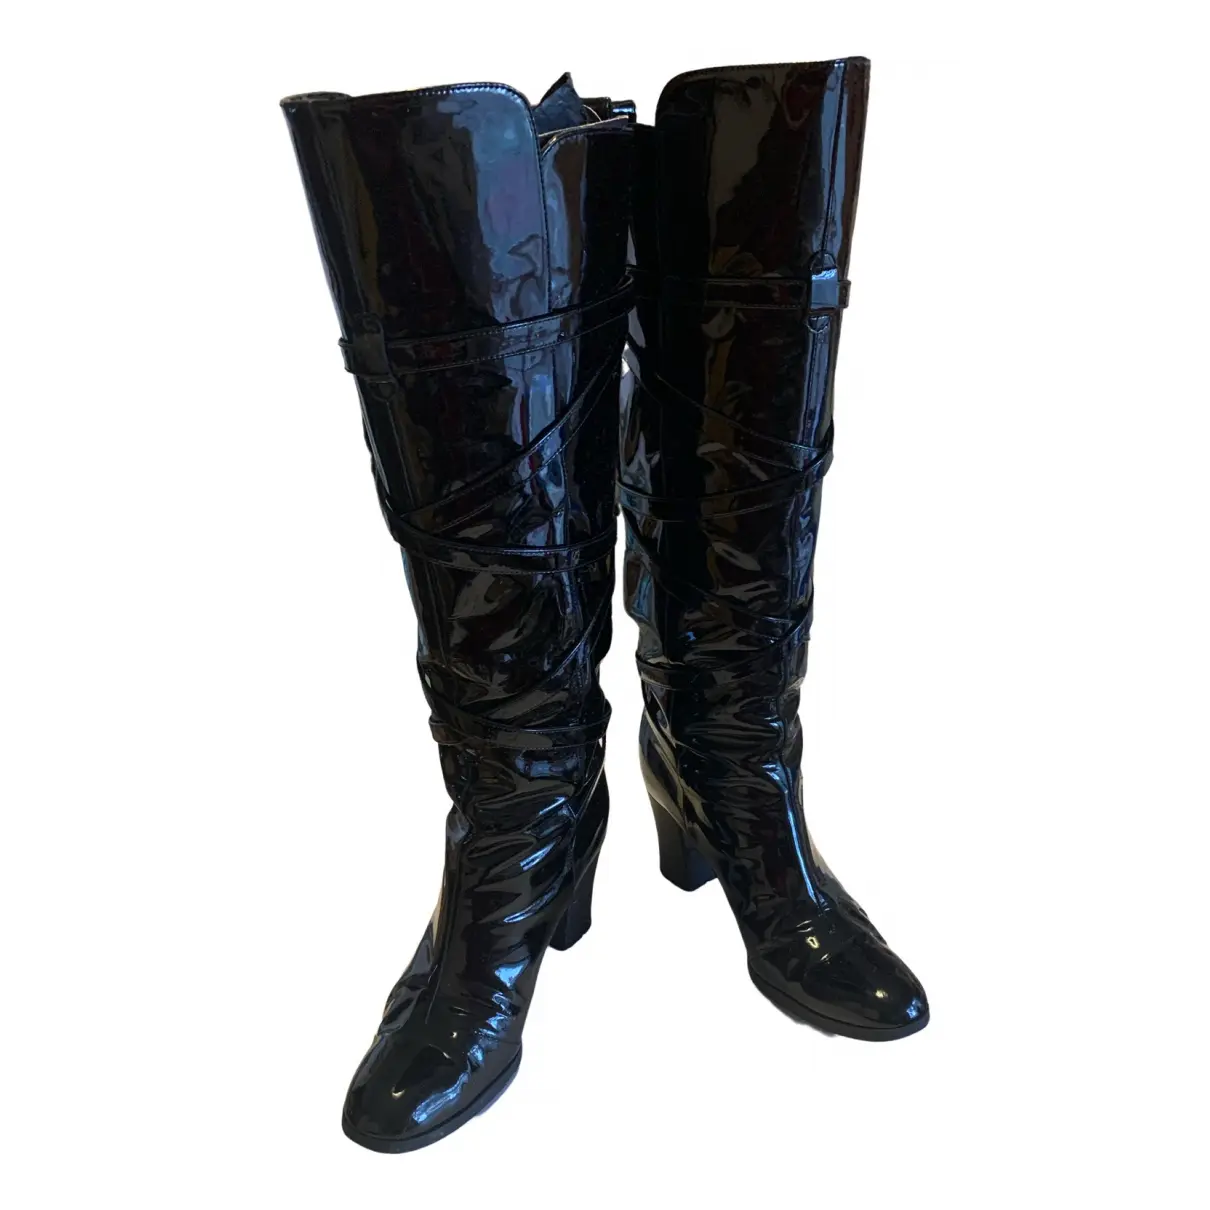 Patent leather boots Yves Saint Laurent - Vintage